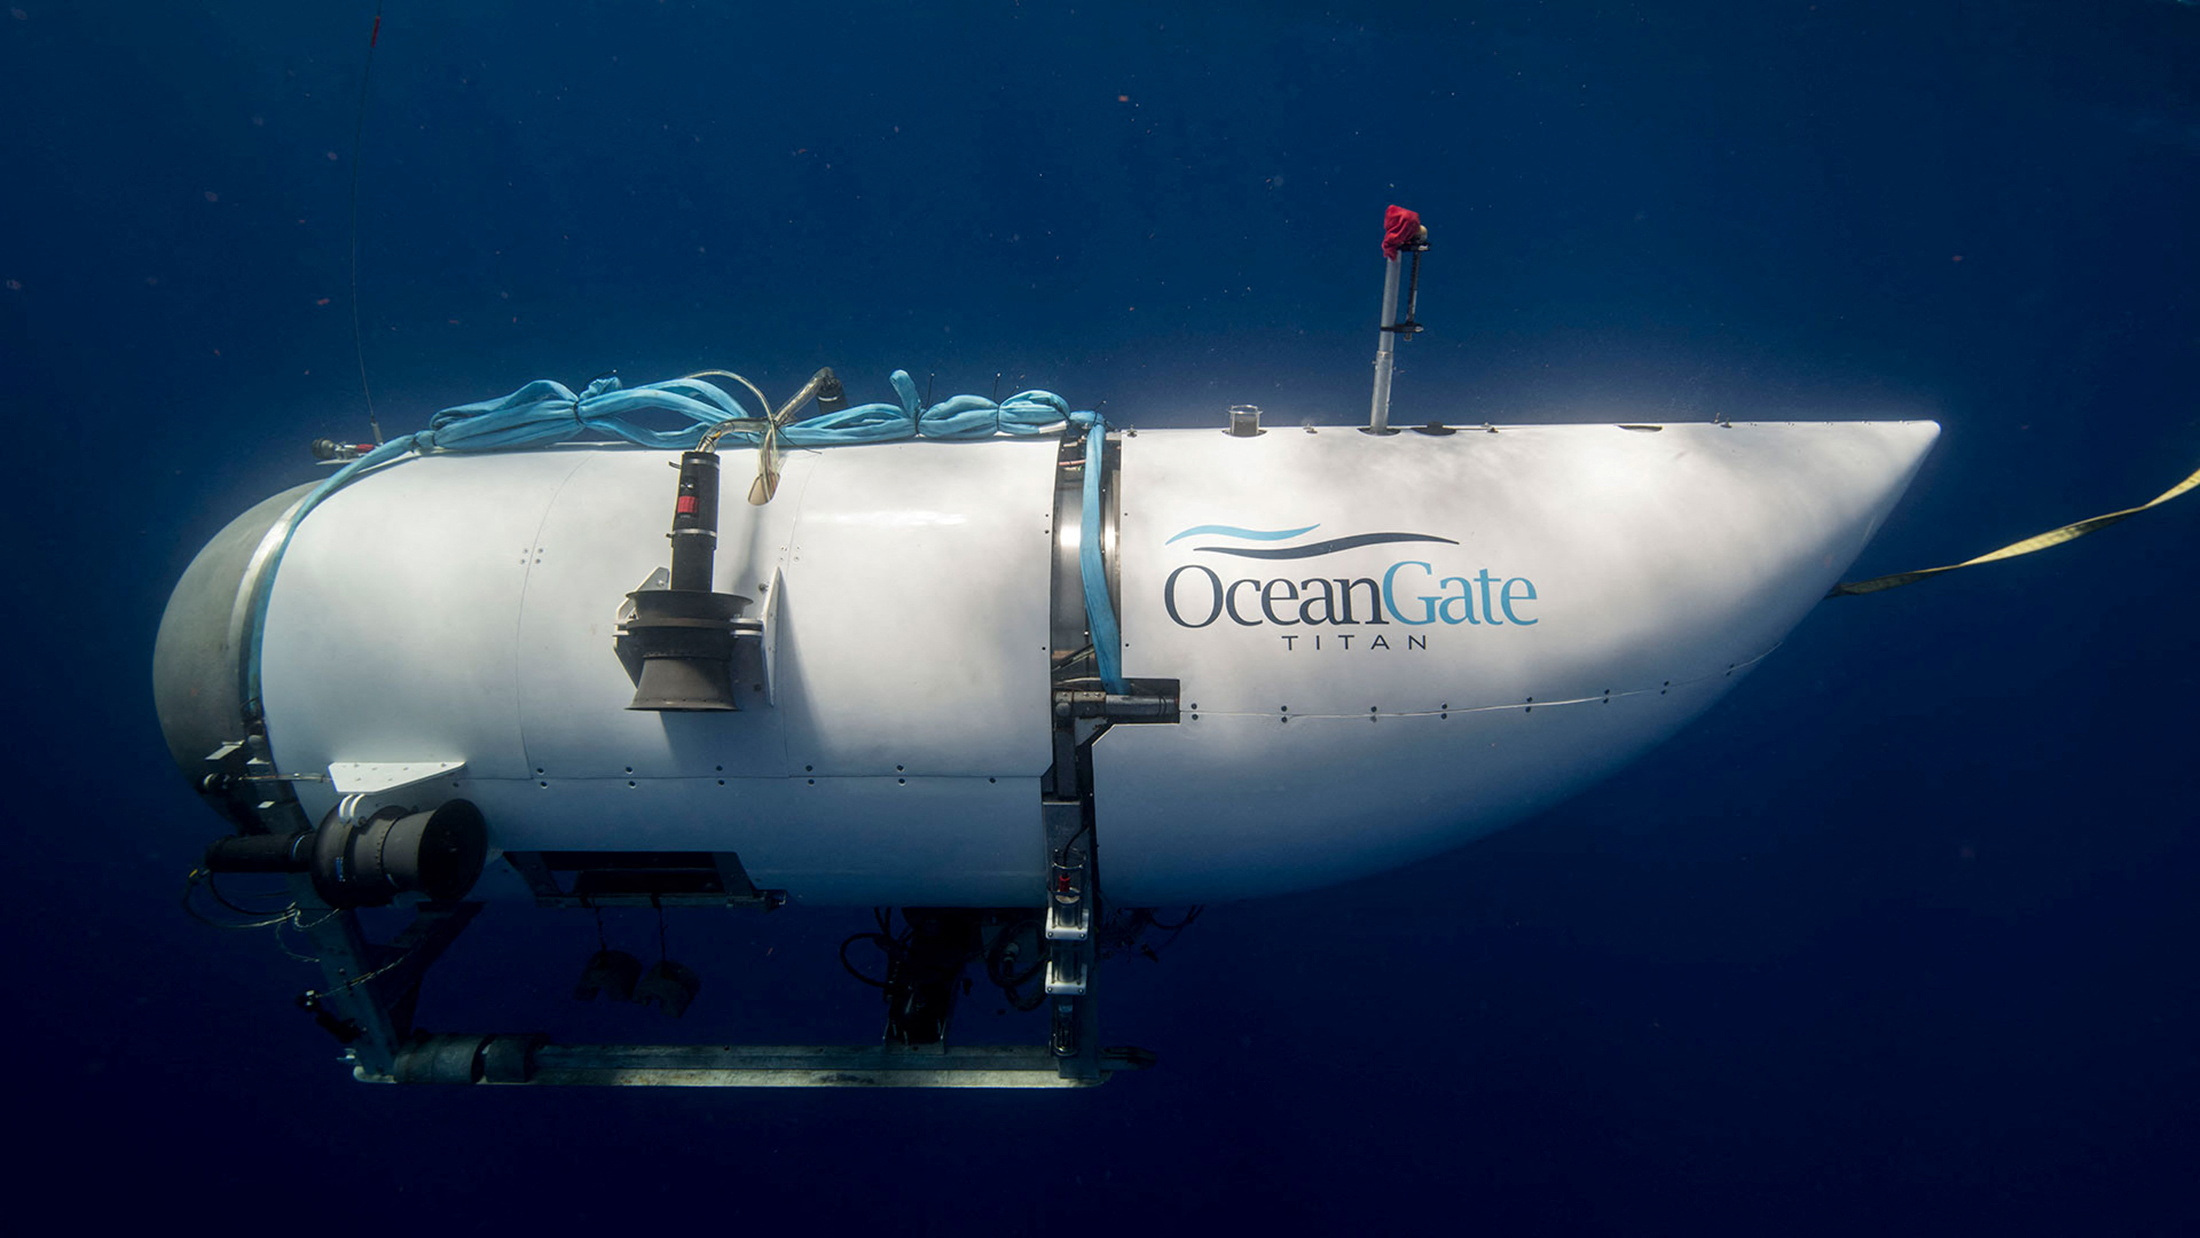 Τιτανικός: «Ο κυβερνήτης ήταν σχολαστικός σε θέματα ασφαλείας» λέει ο συνιδρυτής της OceanGate